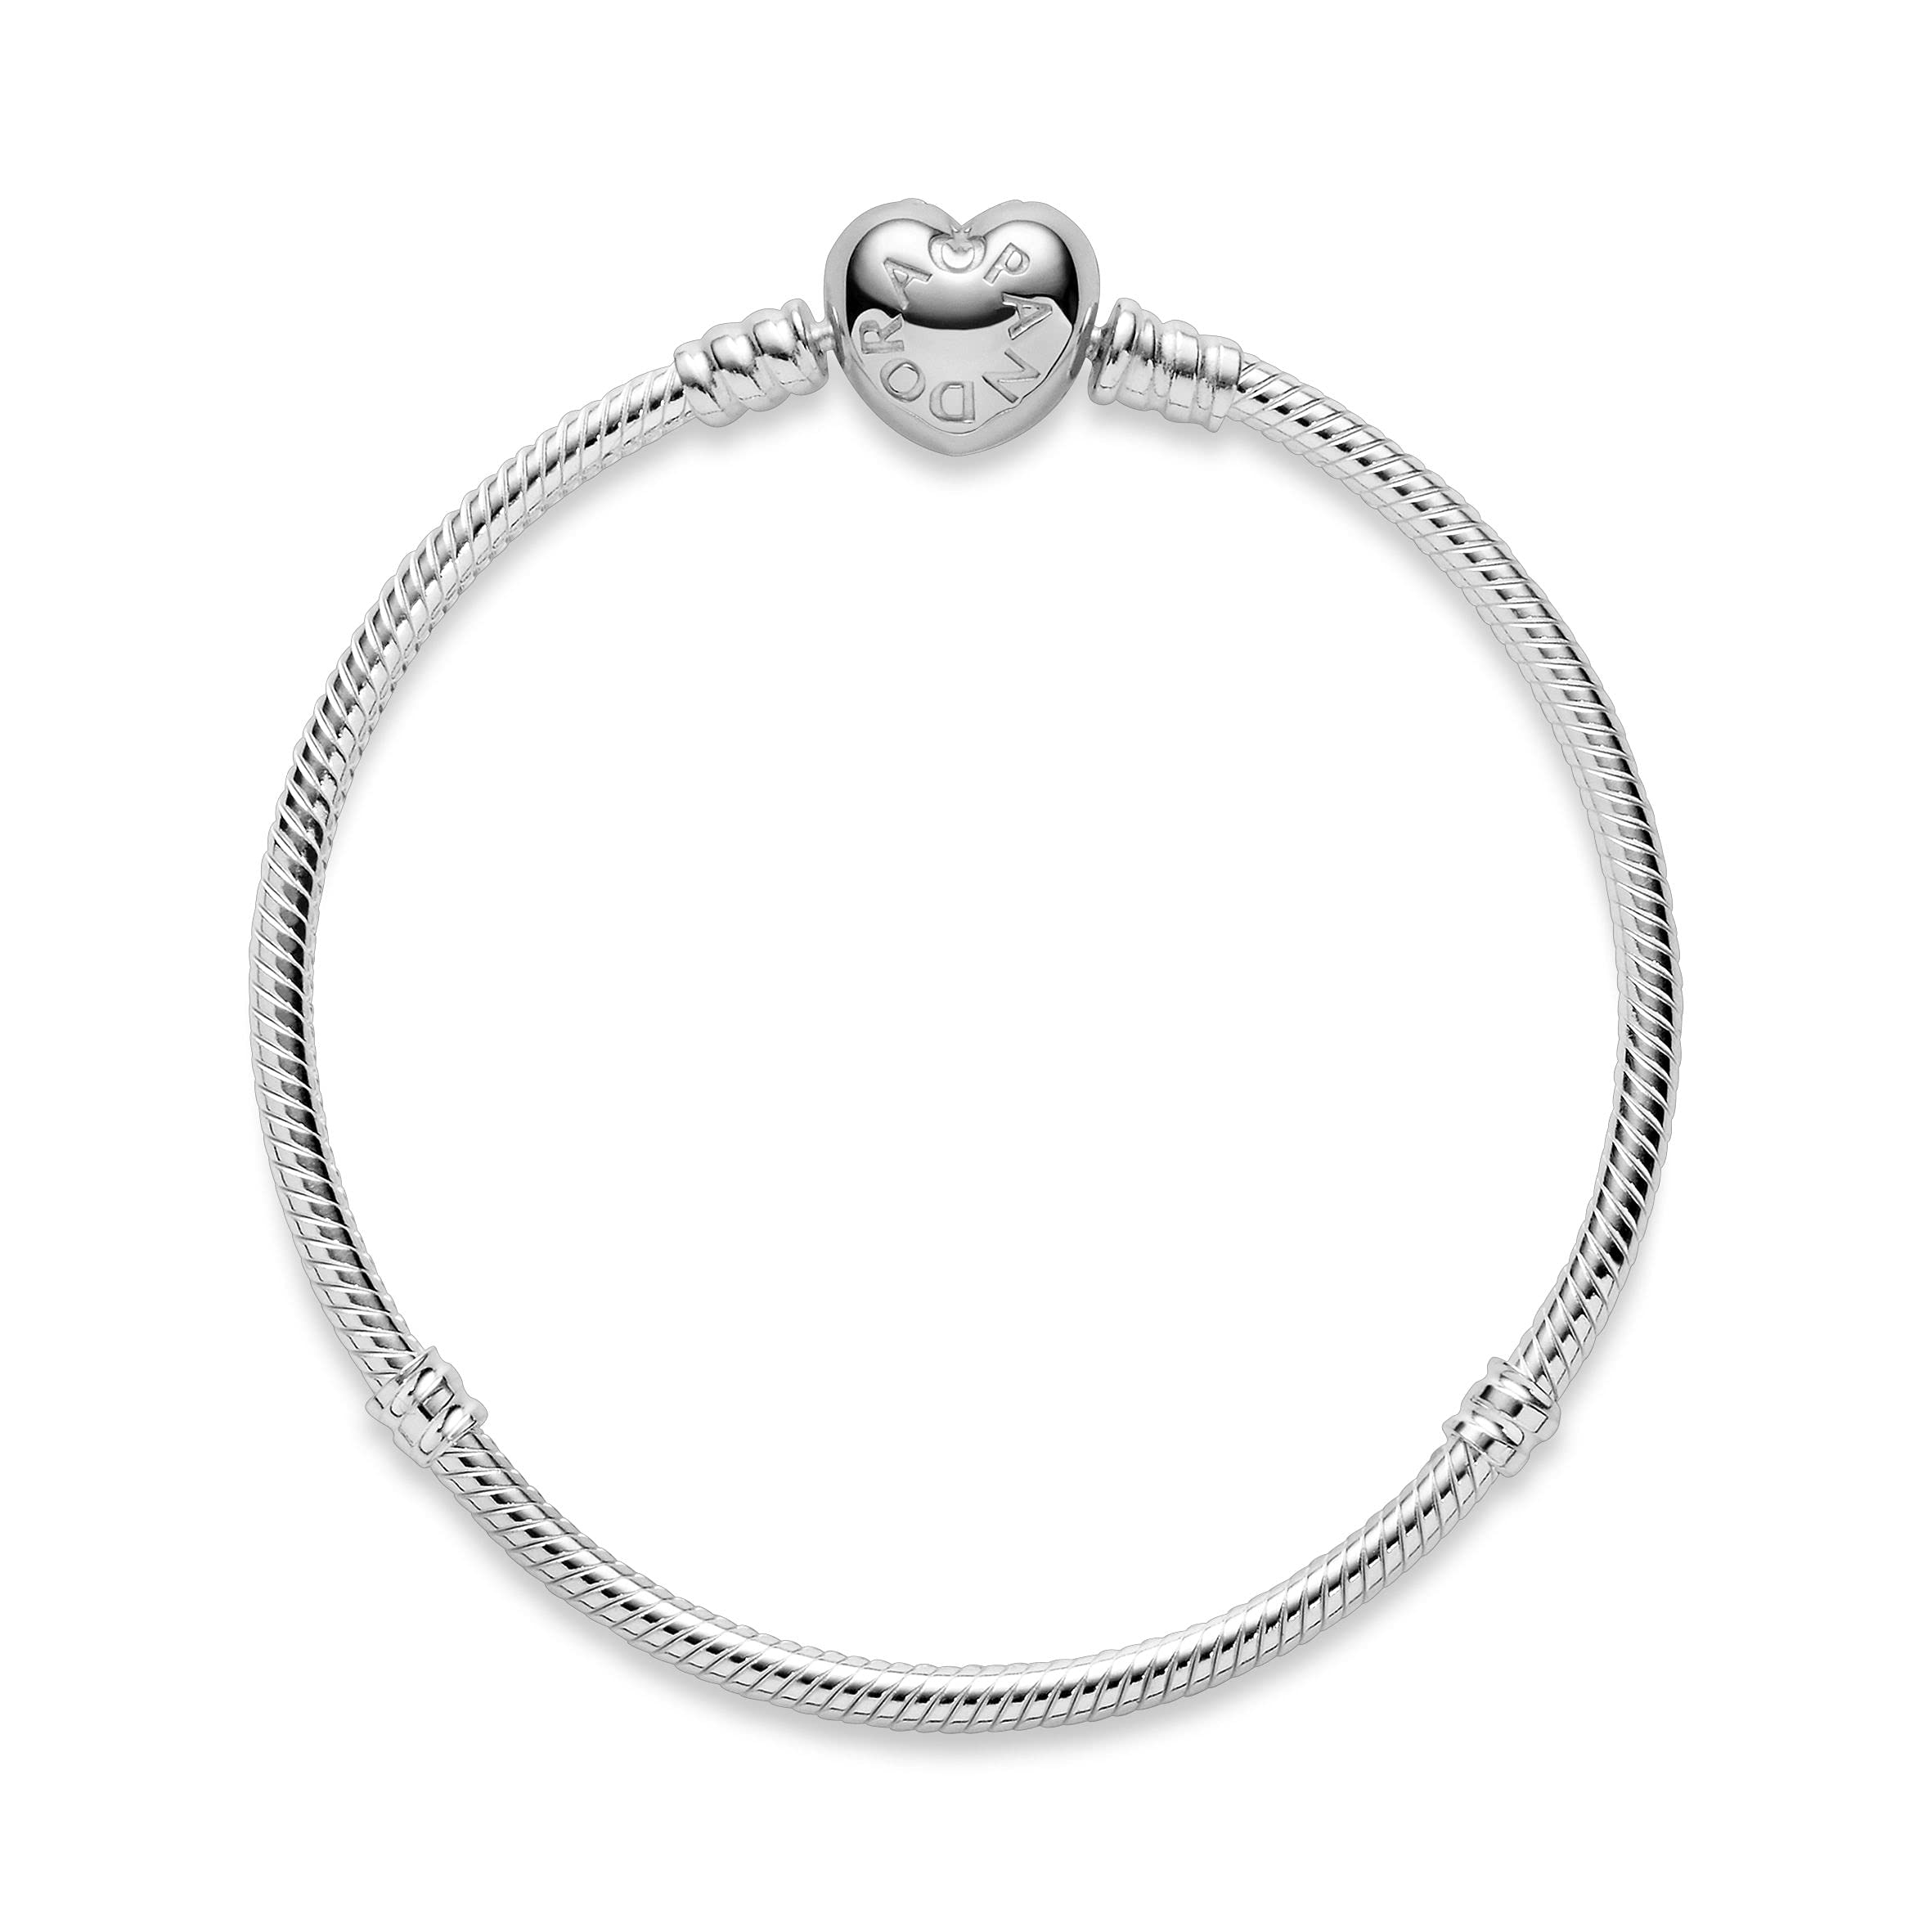 PANDORA Women's Bracelet Sterling Silver ref: 590719-19